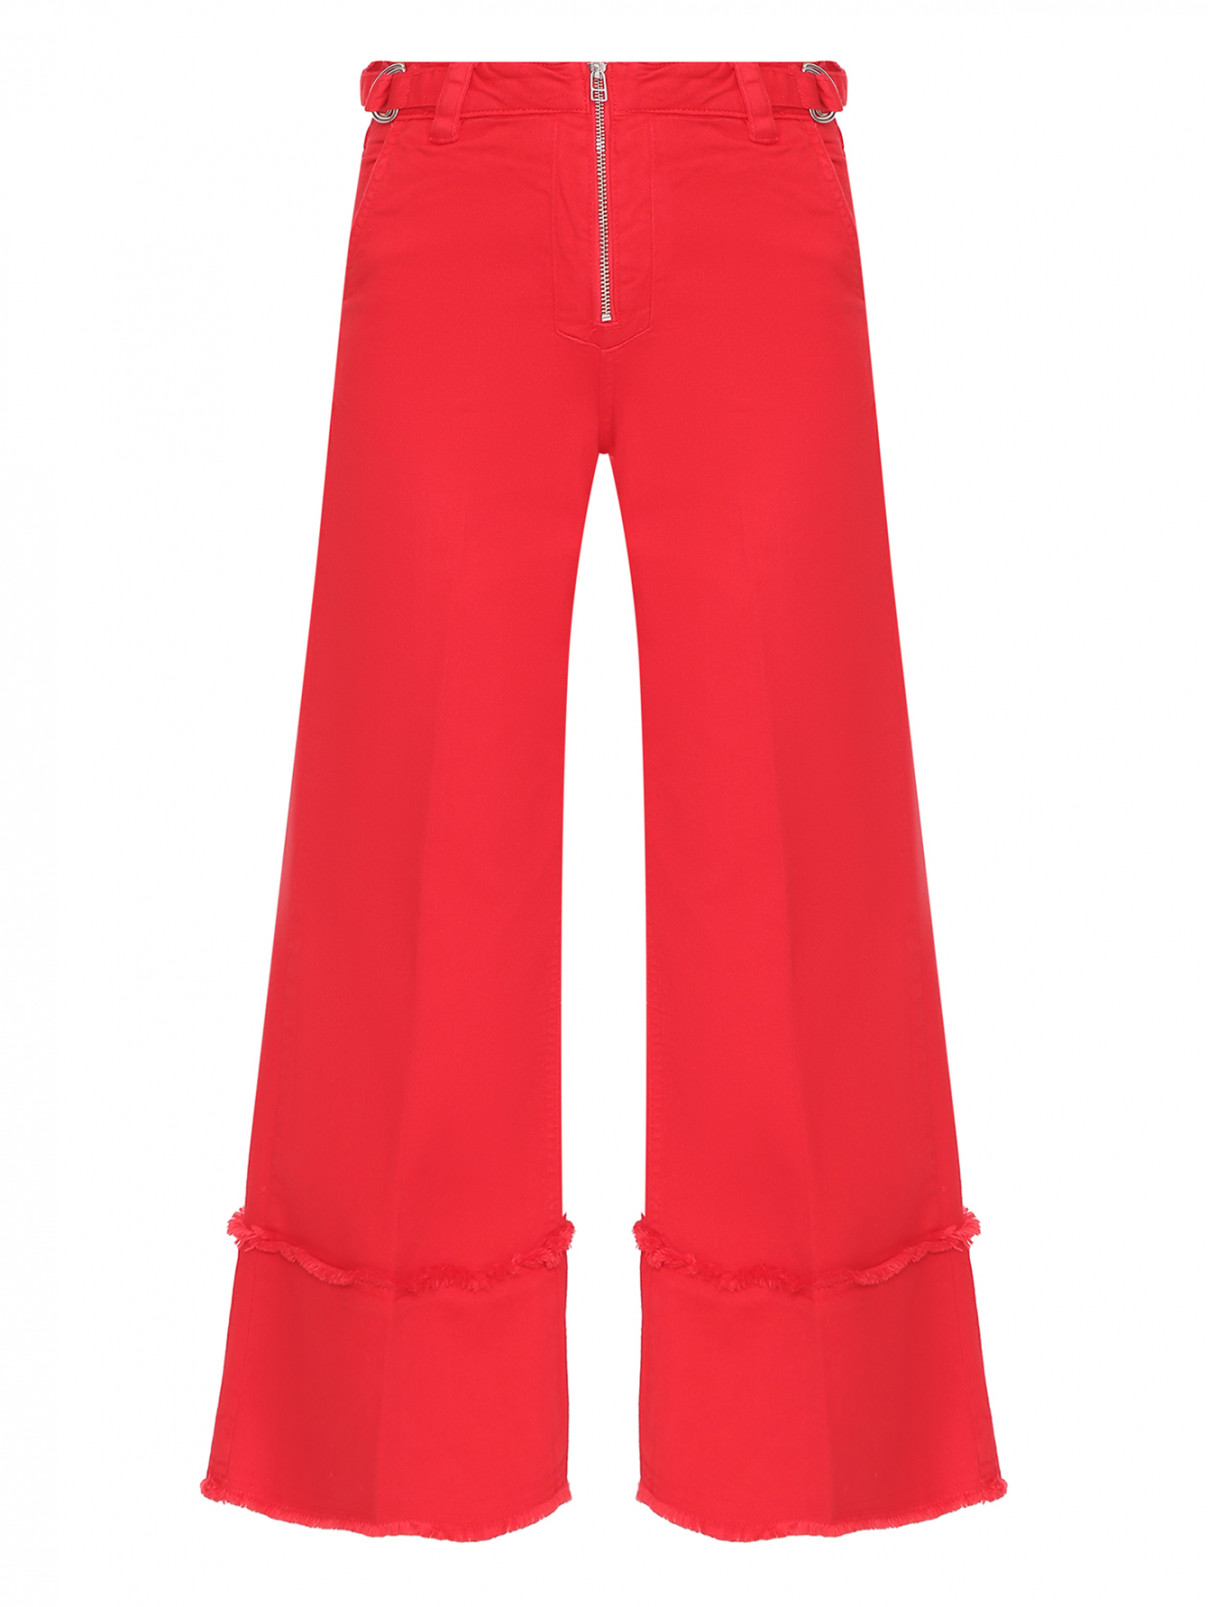 Джинсы-клеш декорированные молнией и вышивкой на кармане Max&Co  –  Общий вид  – Цвет:  Красный